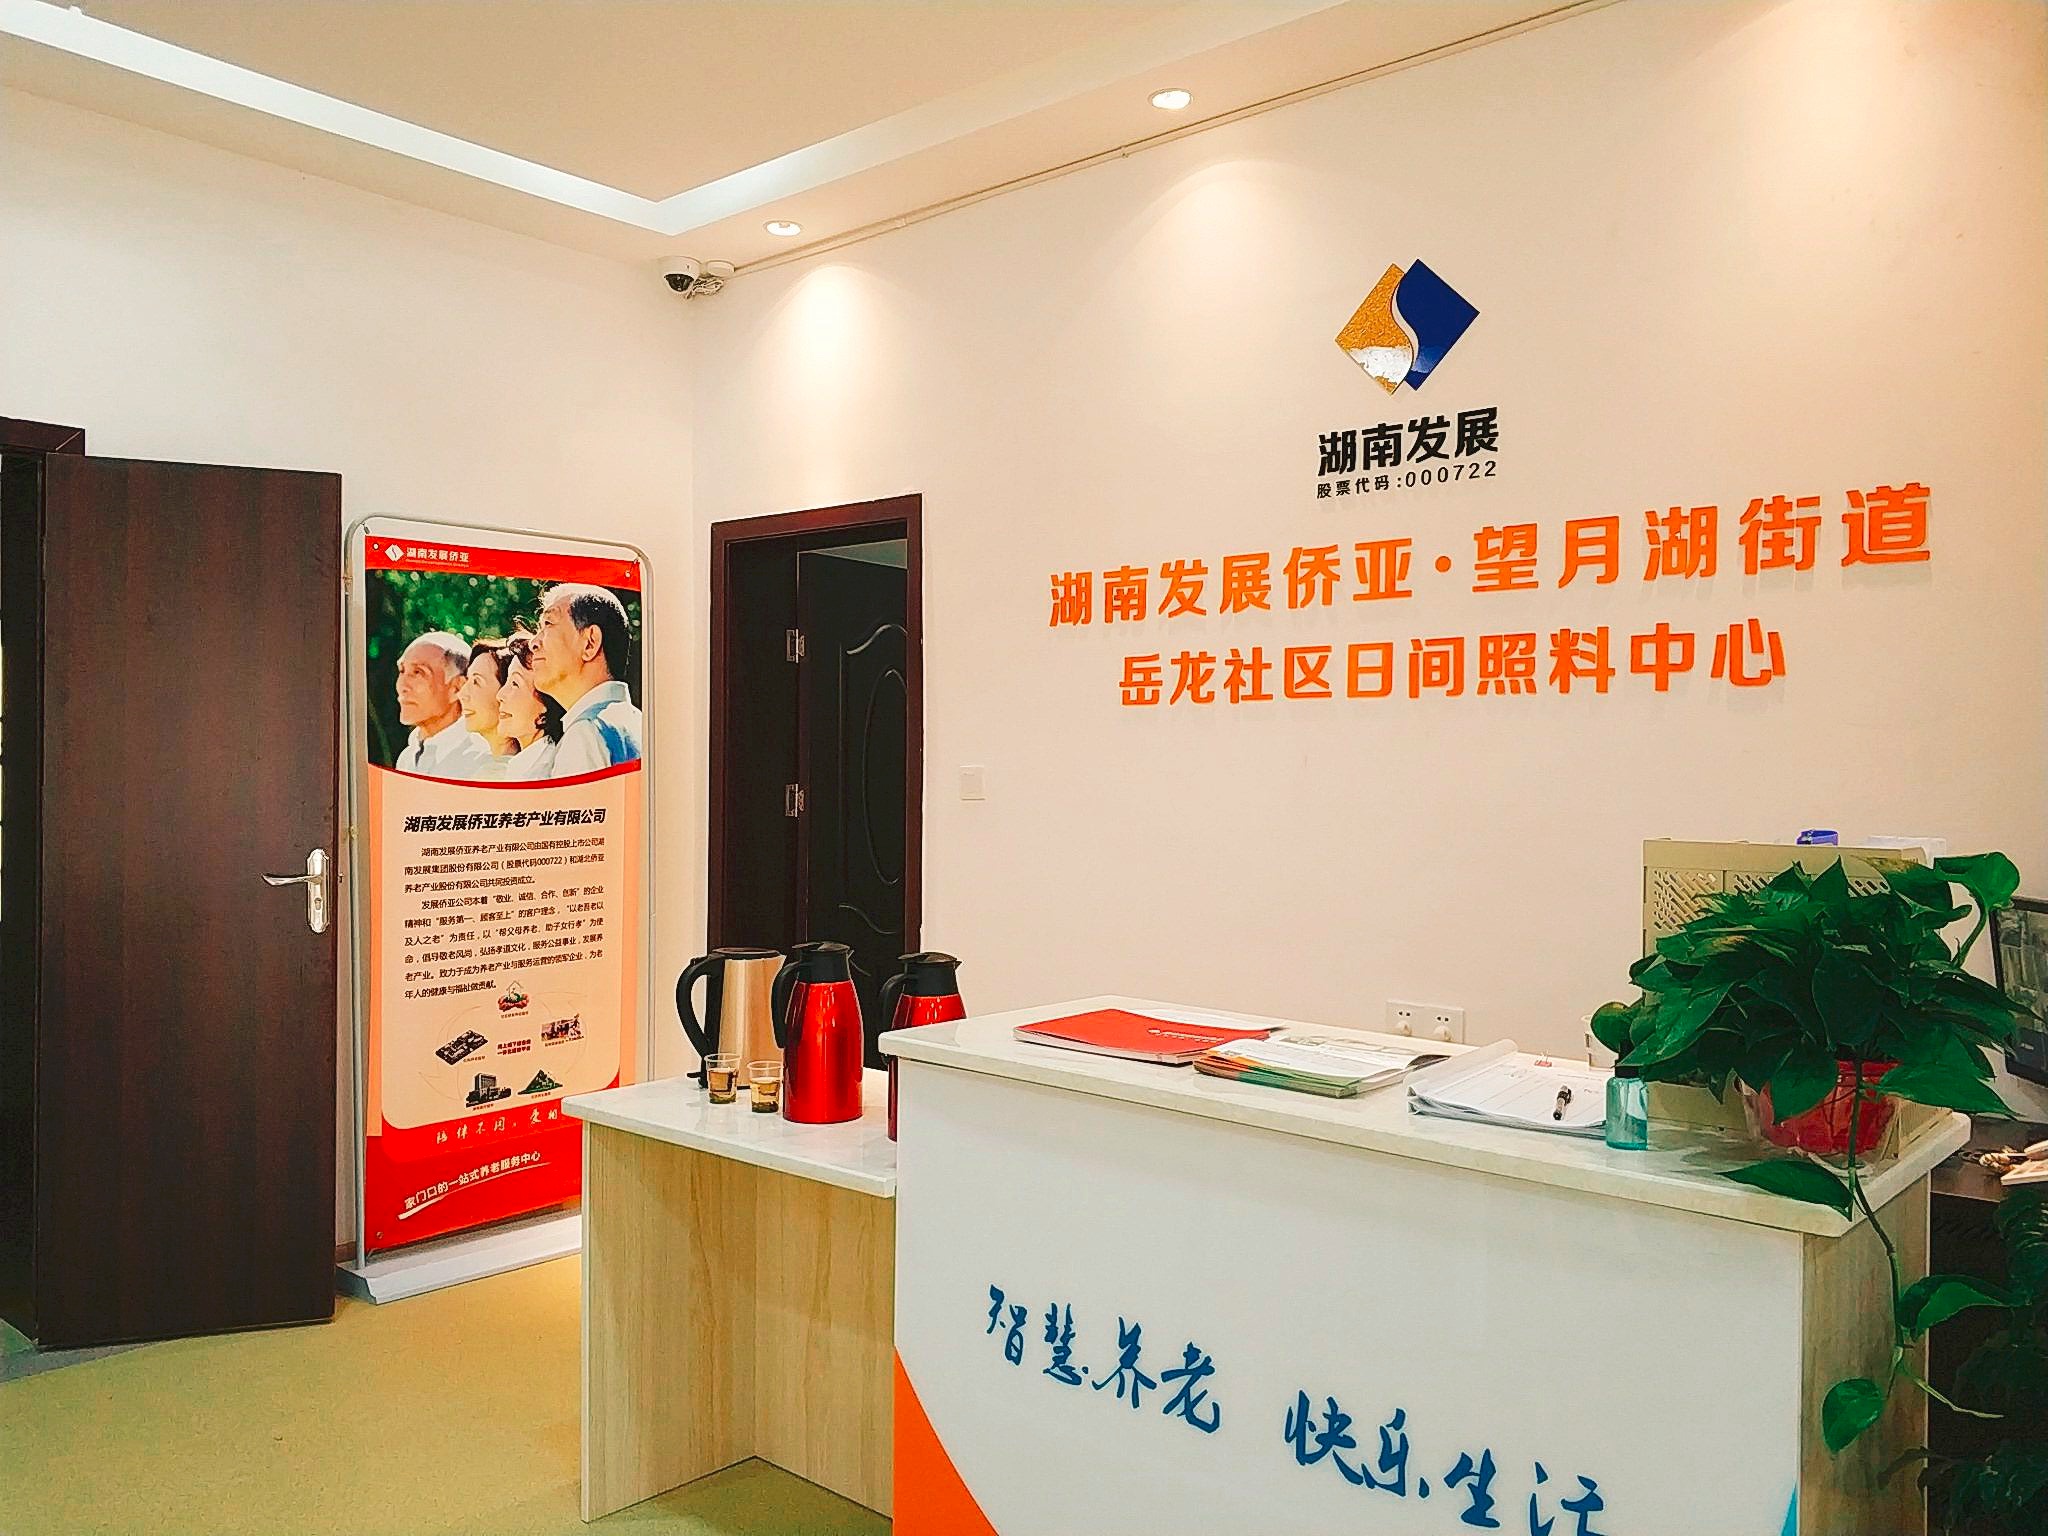 kok平台网址（中国）有限公司第一家社区养老中心开放 打造水电、养老产业双轮驱动模式